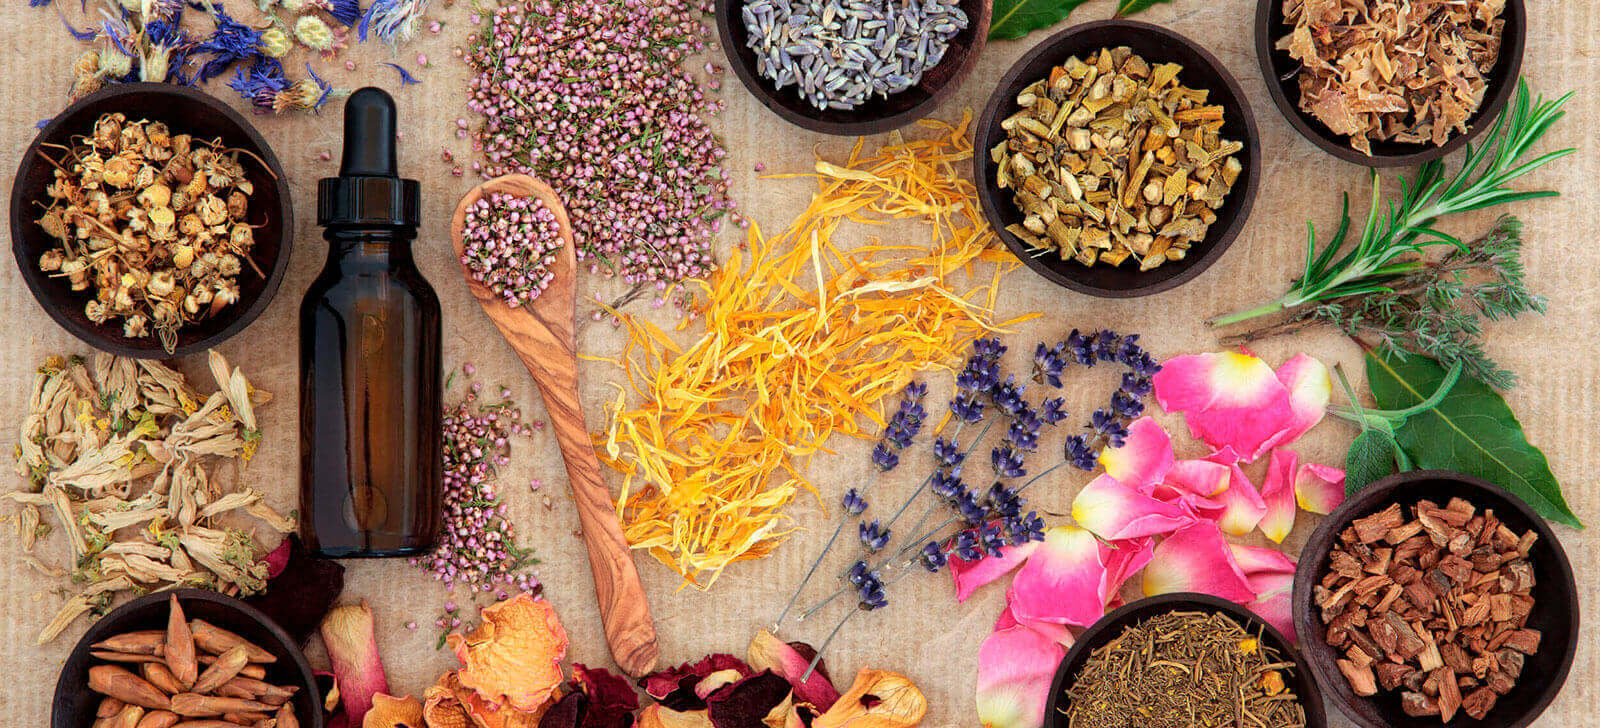 Conheça os principais remédios naturais feitos à base de flores